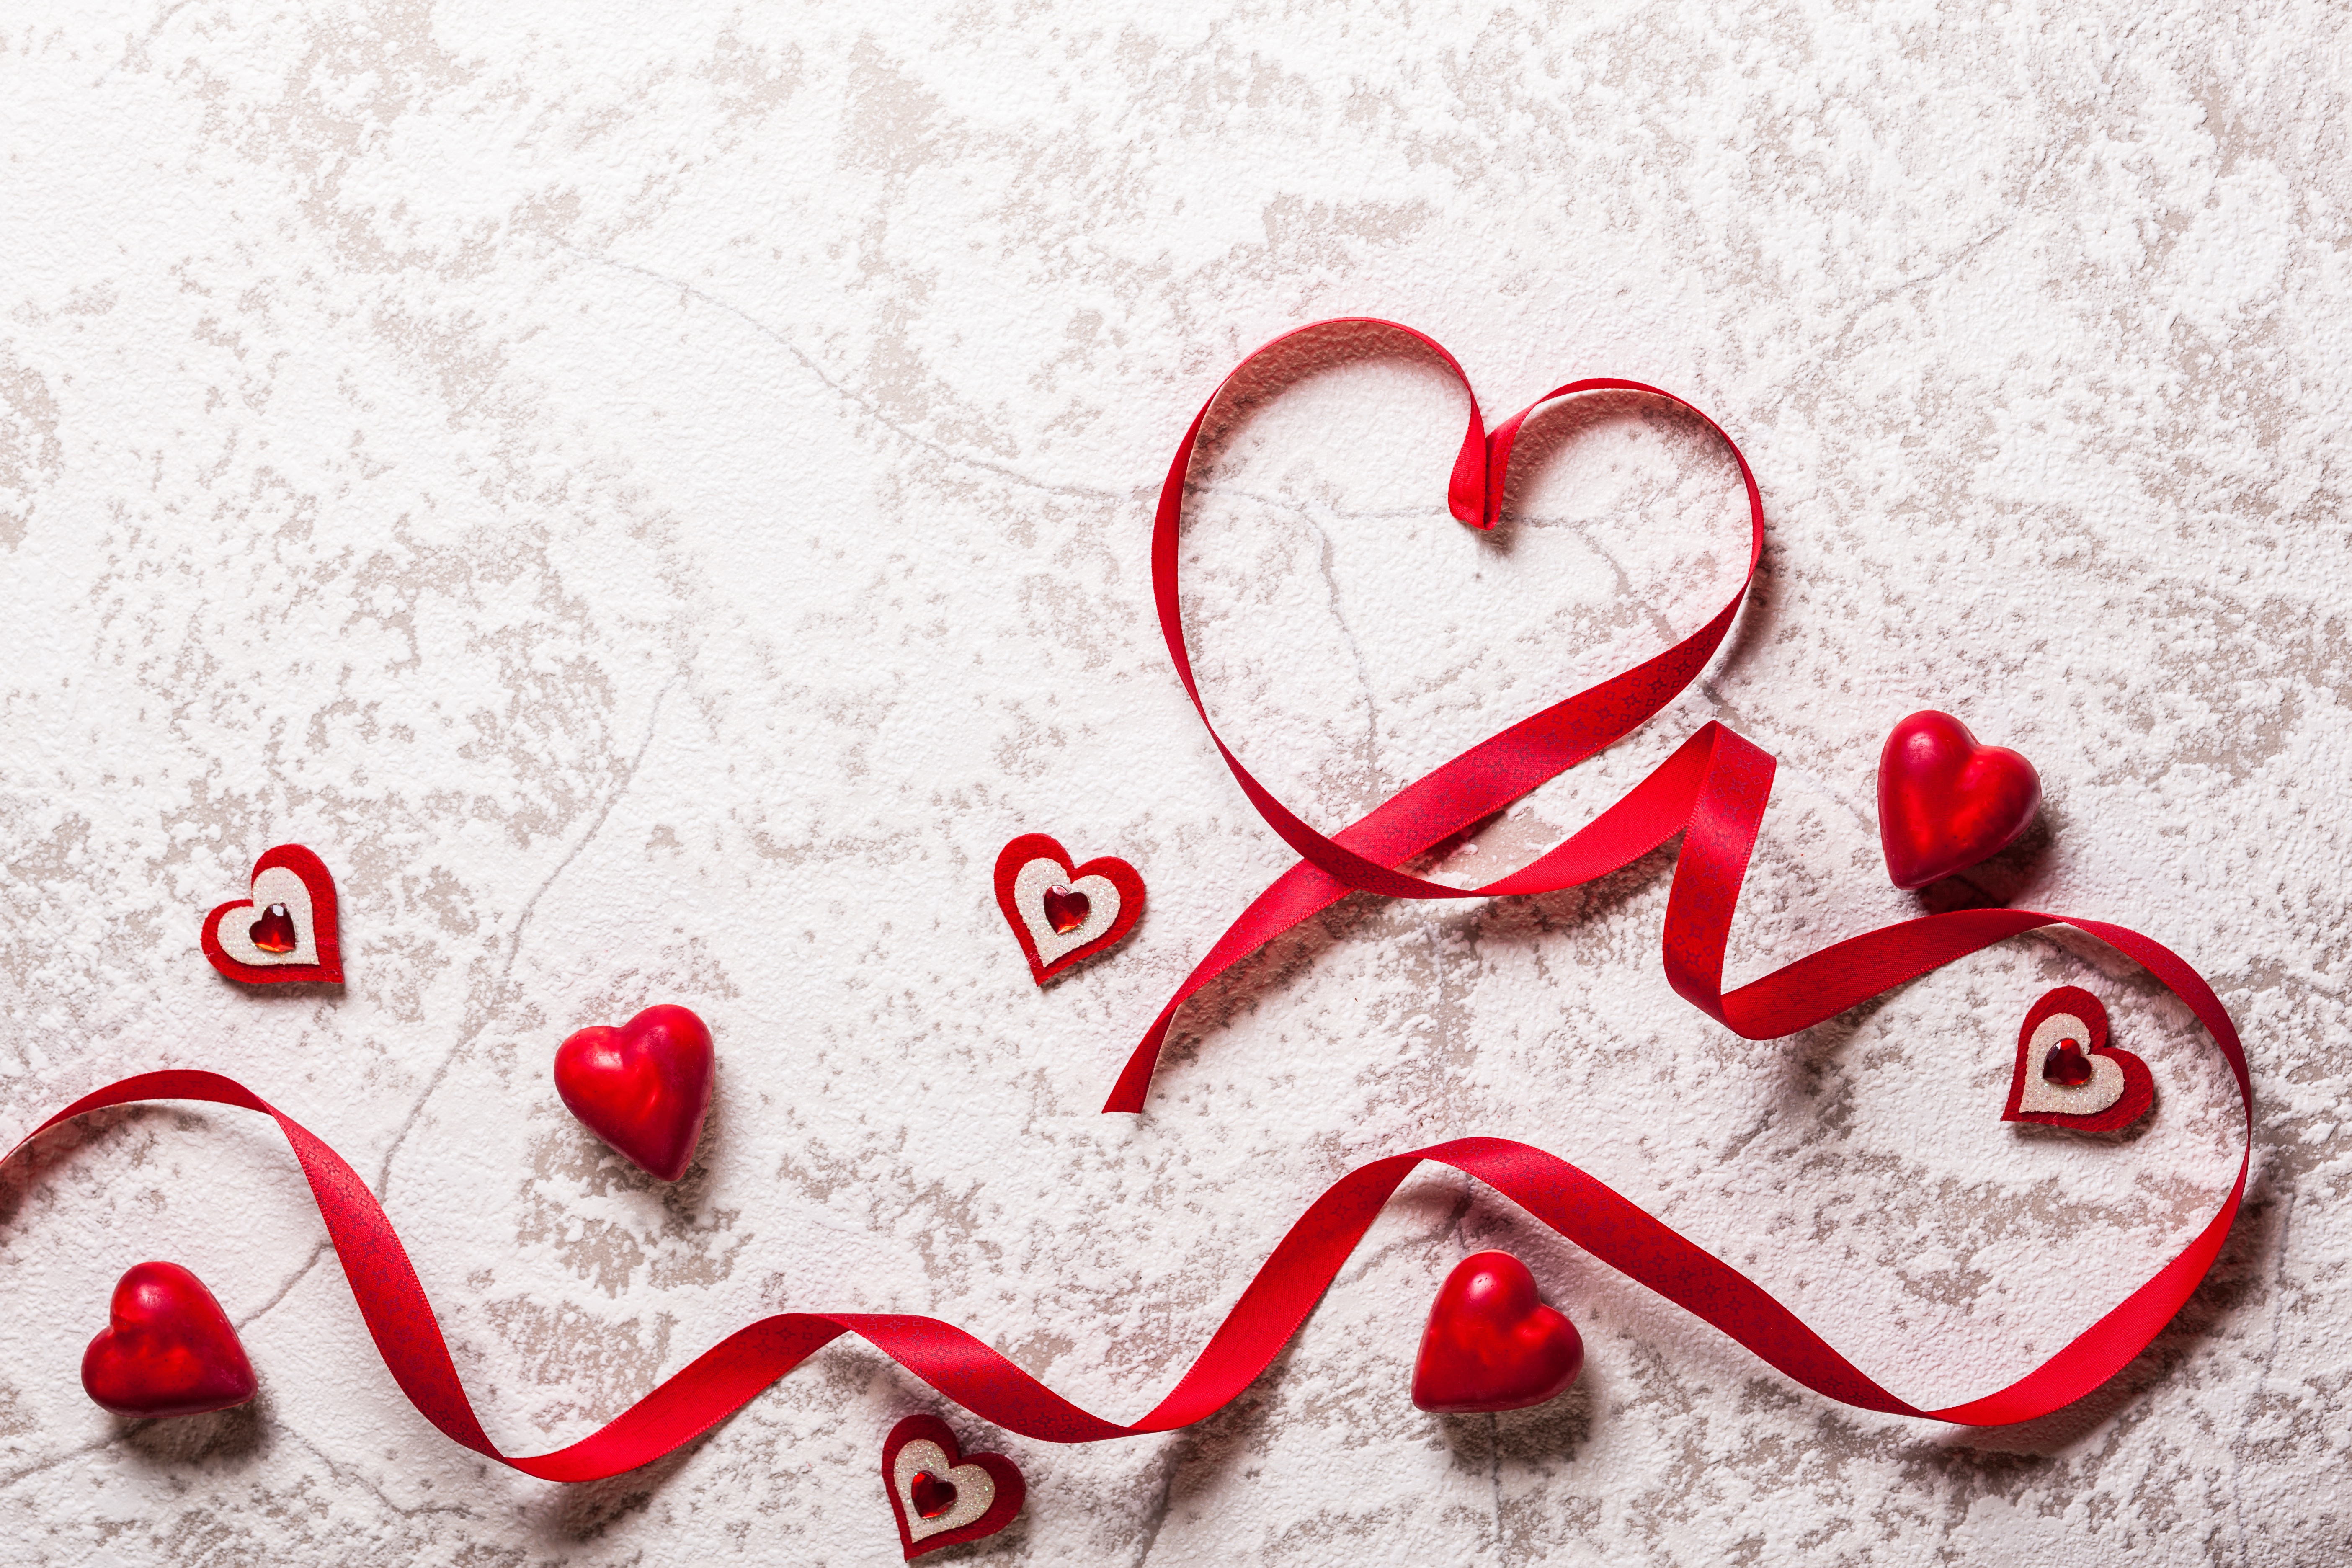 Love valentine s. С днем влюбленных. 14 Февраля день влюбленных. С днем влюбленных картинки.